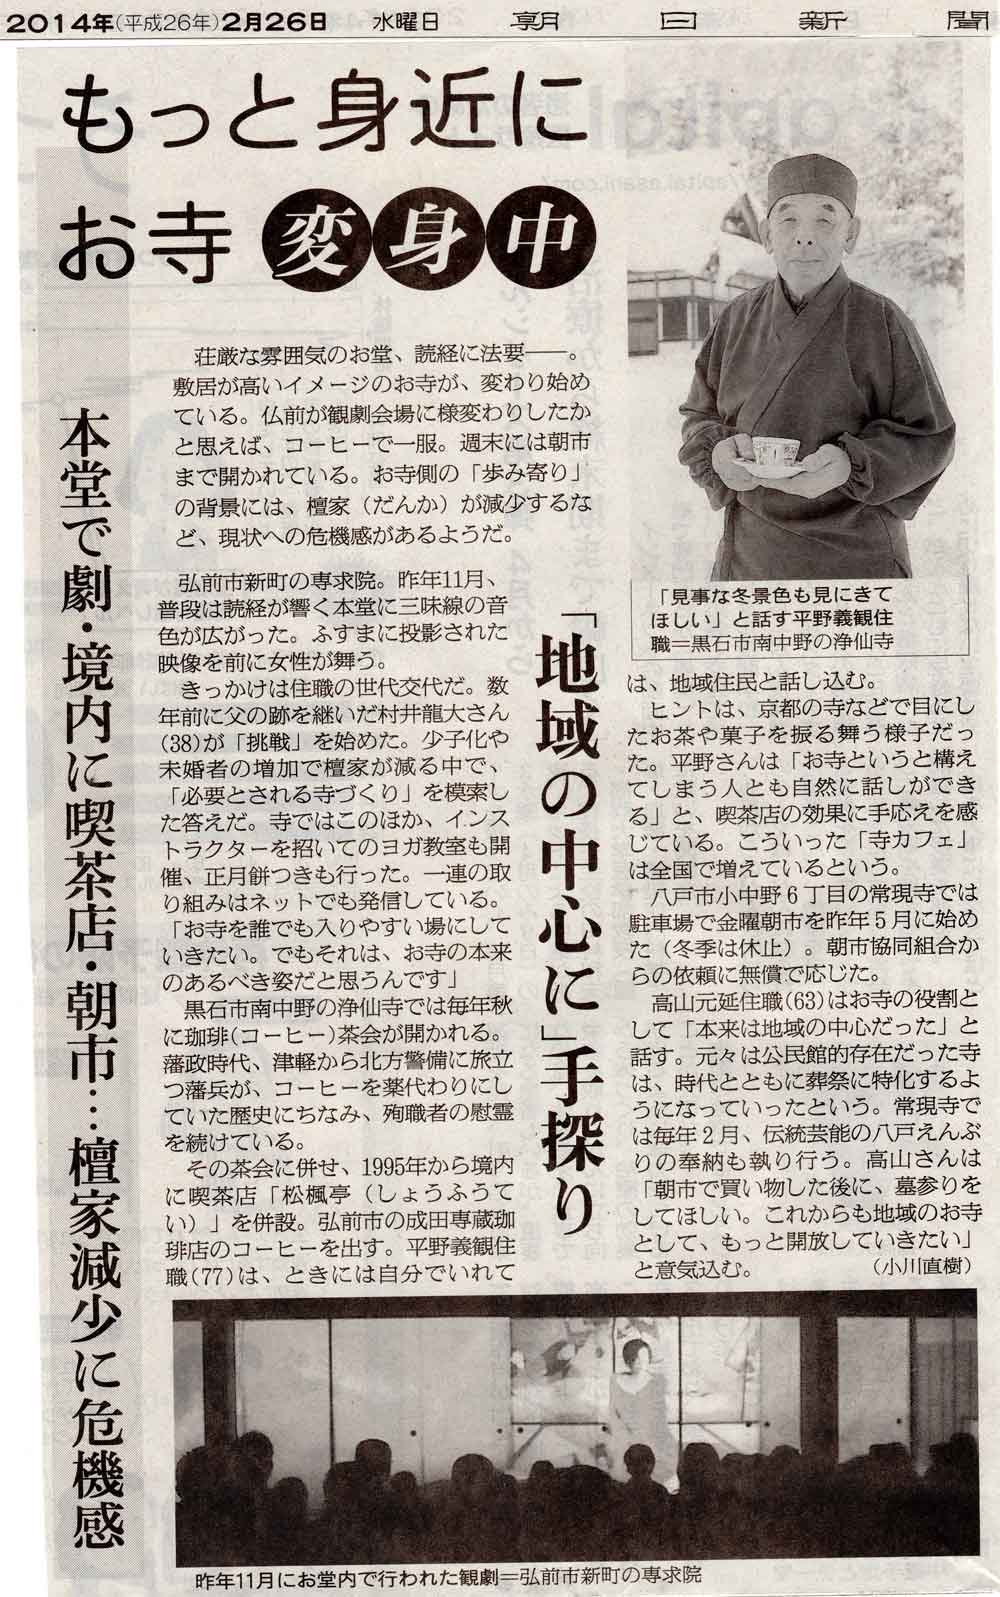 本日2月26日の朝日新聞の朝刊に専求院が掲載されました。